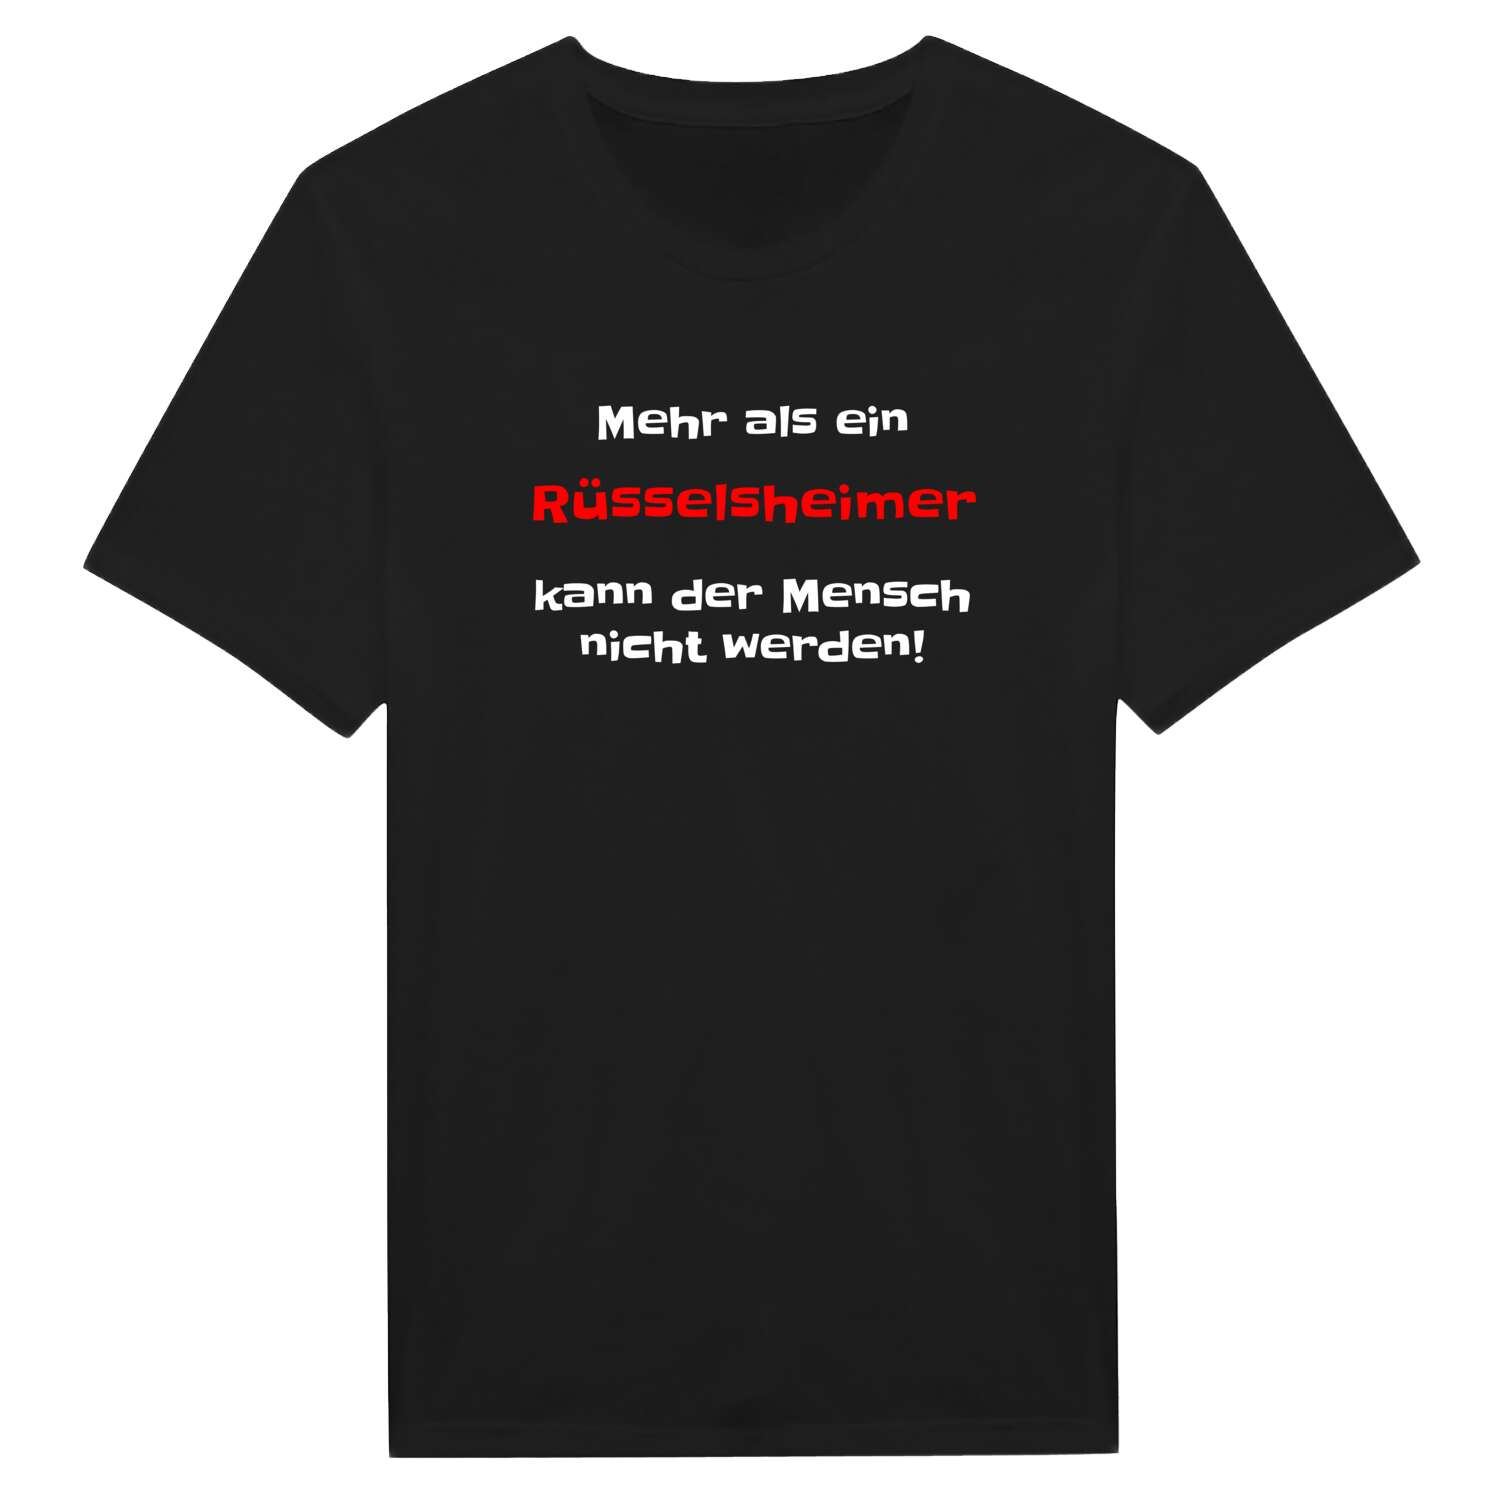 Rüsselsheim T-Shirt »Mehr als ein«